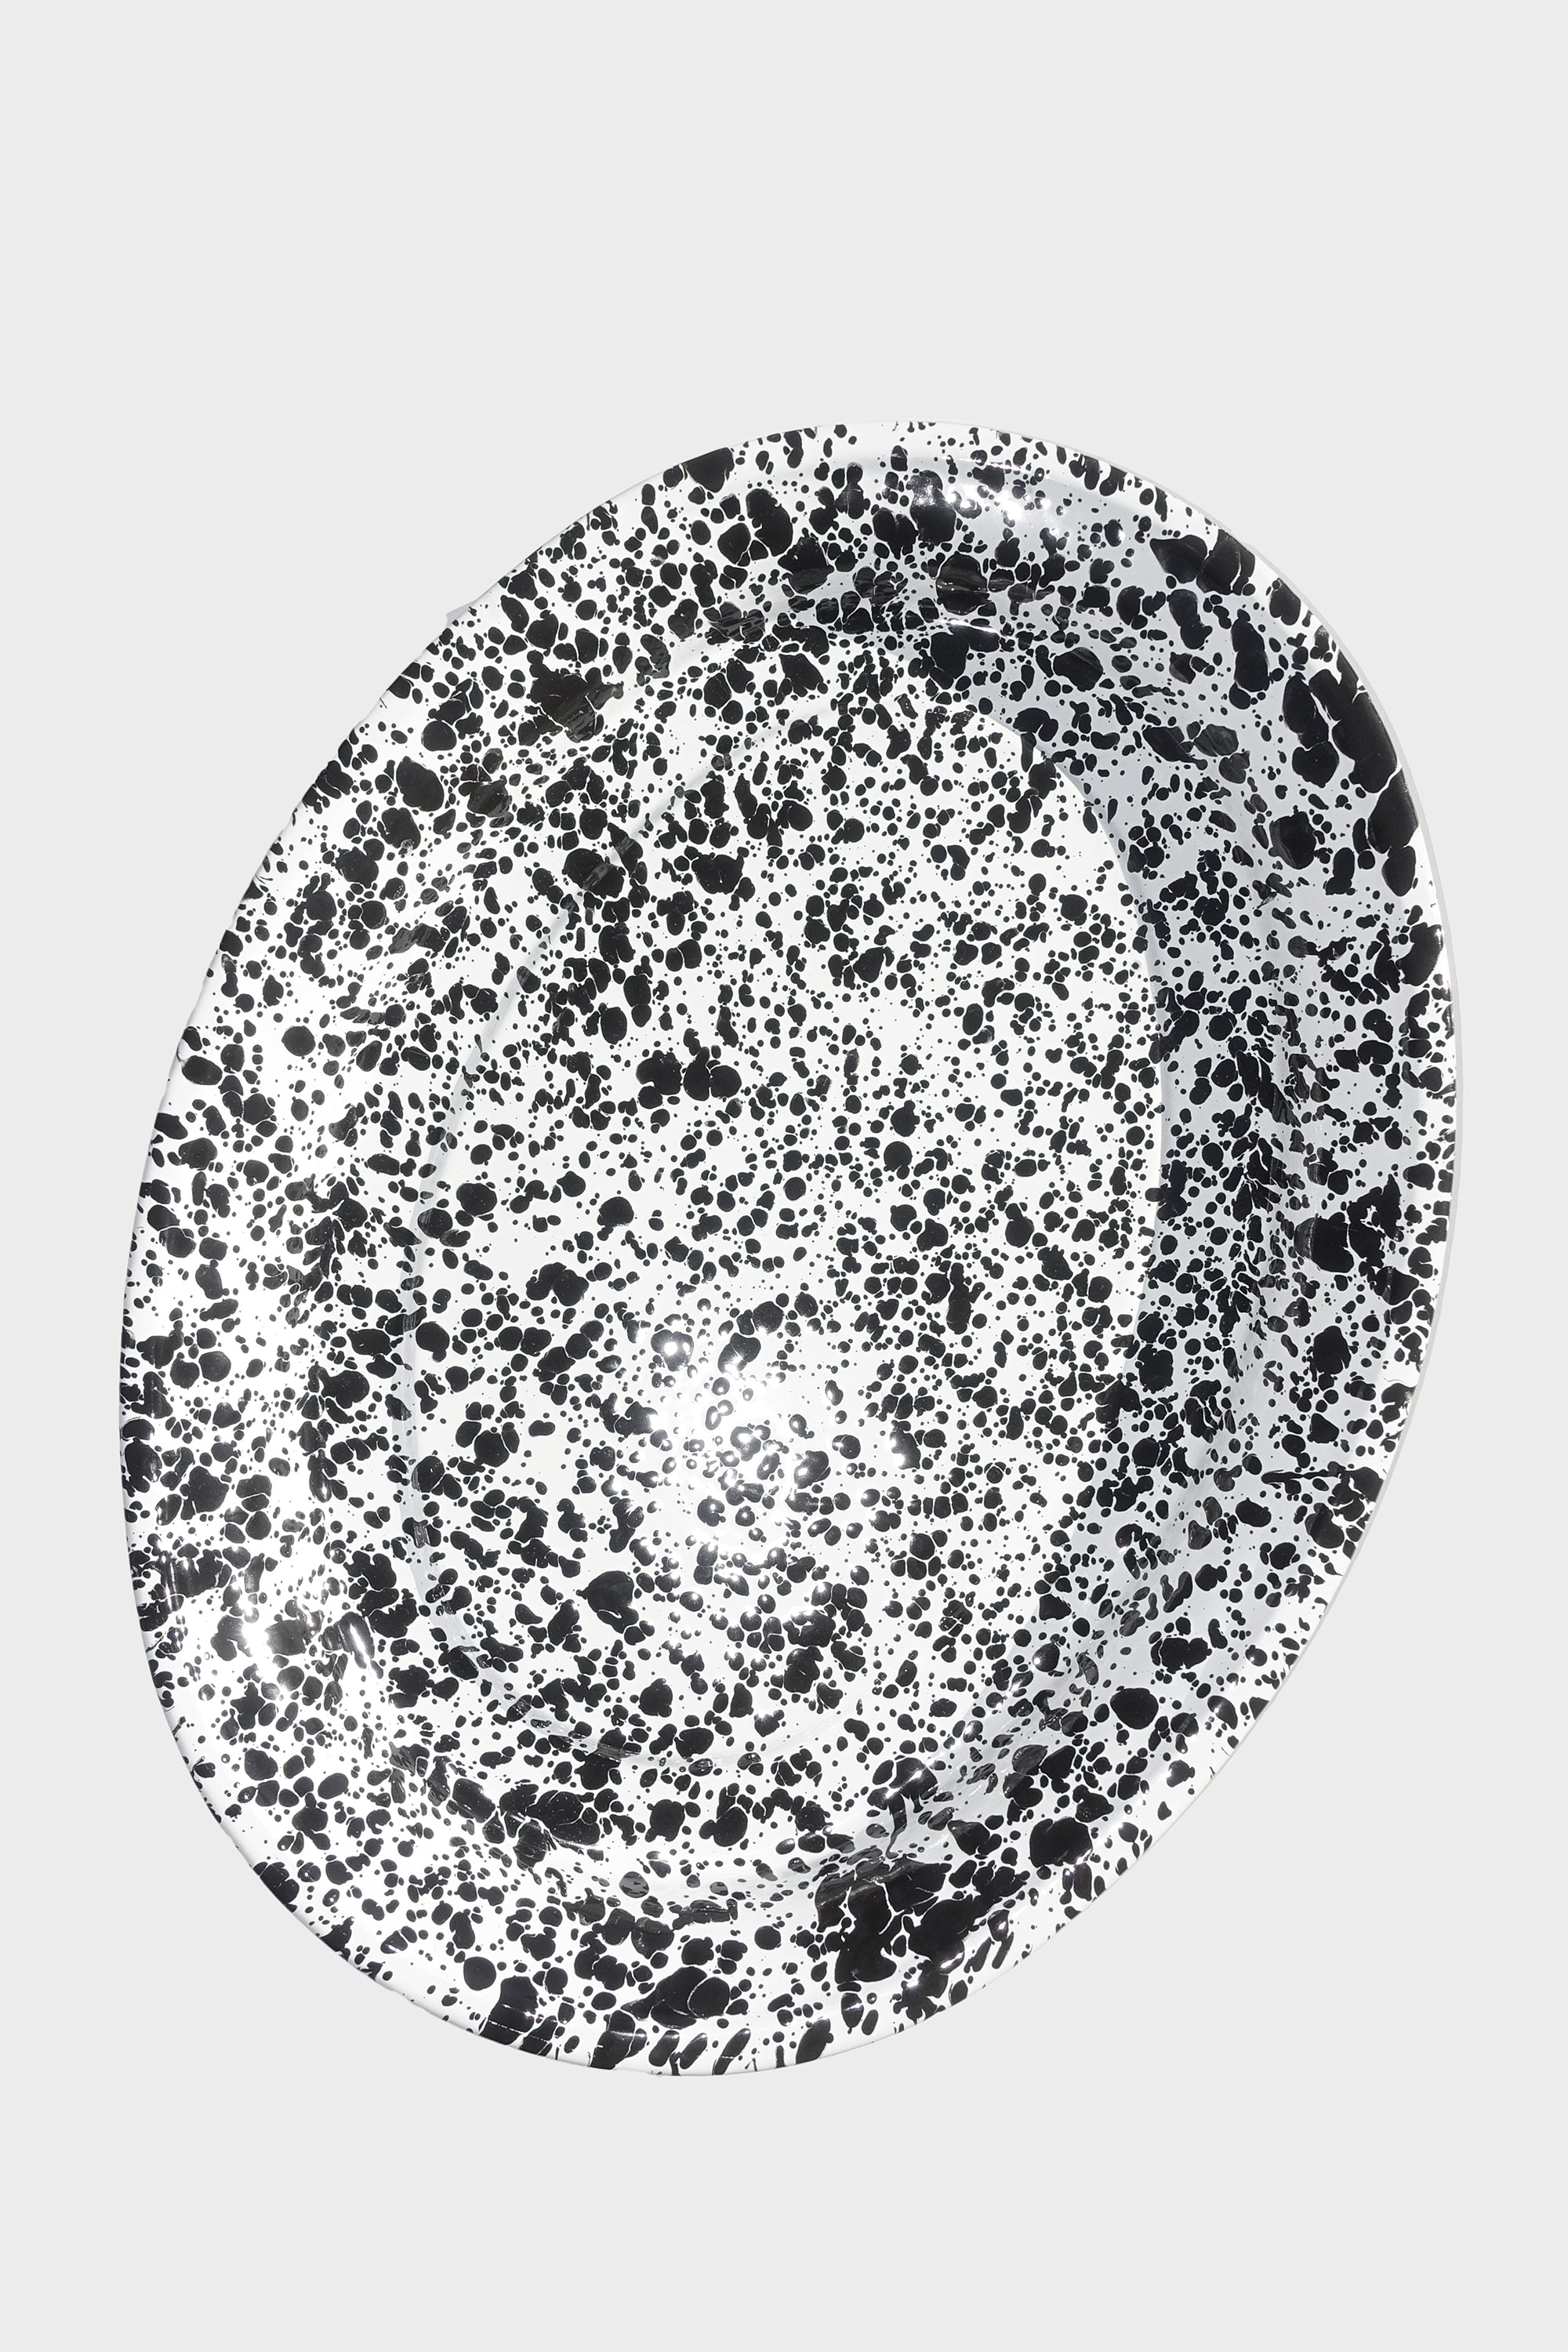 Oval Platter in Black Splatter Enamelware